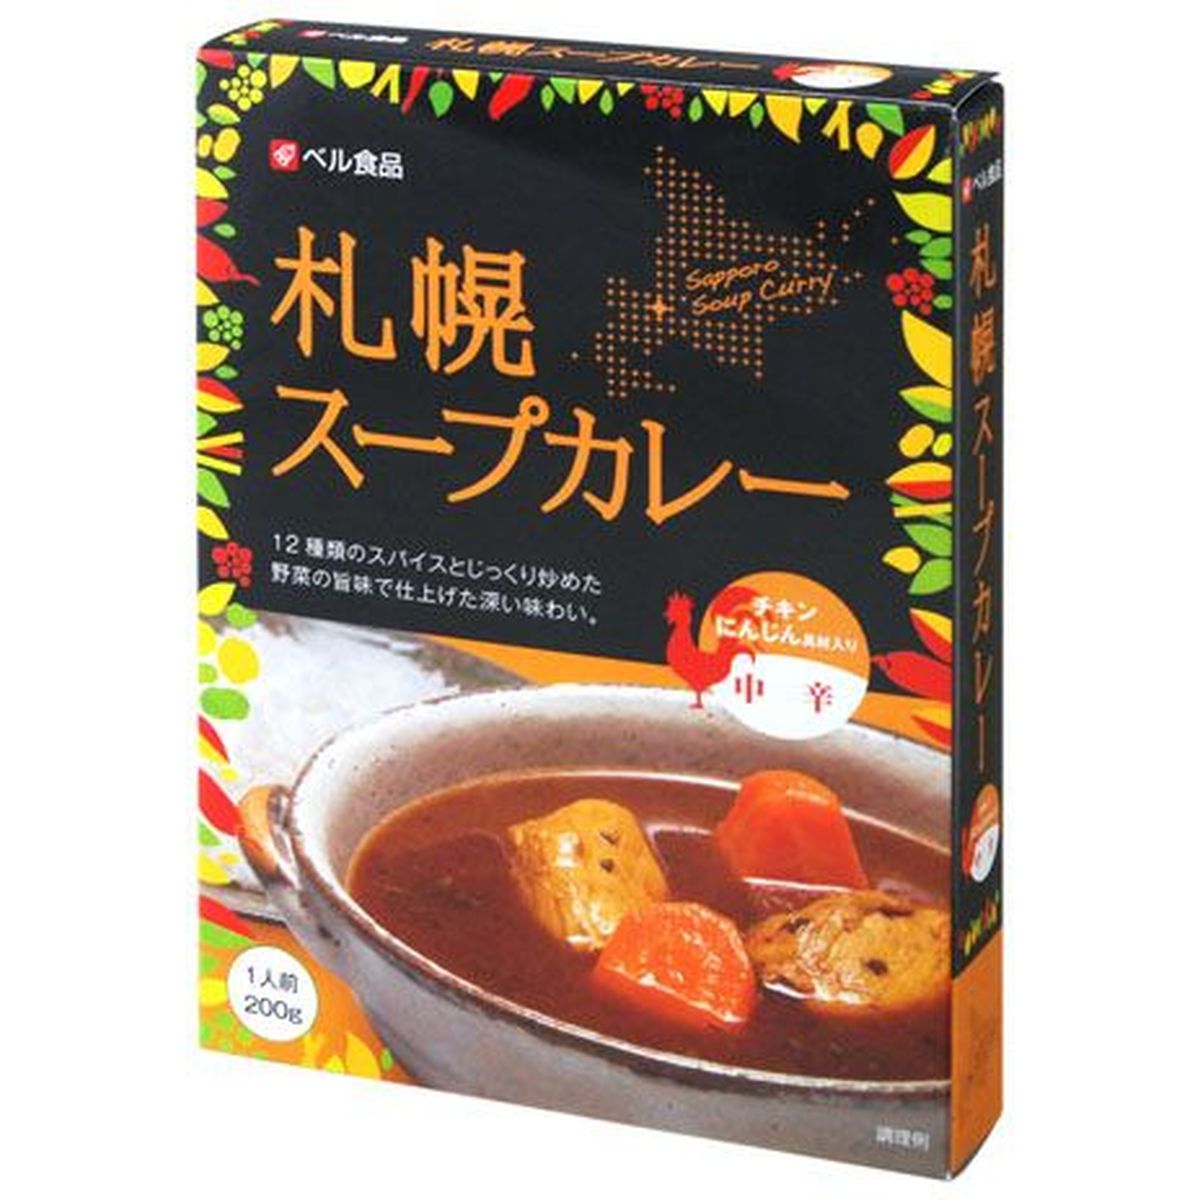 【5個入リ】ベル食品 札幌スープカレー中辛 200g